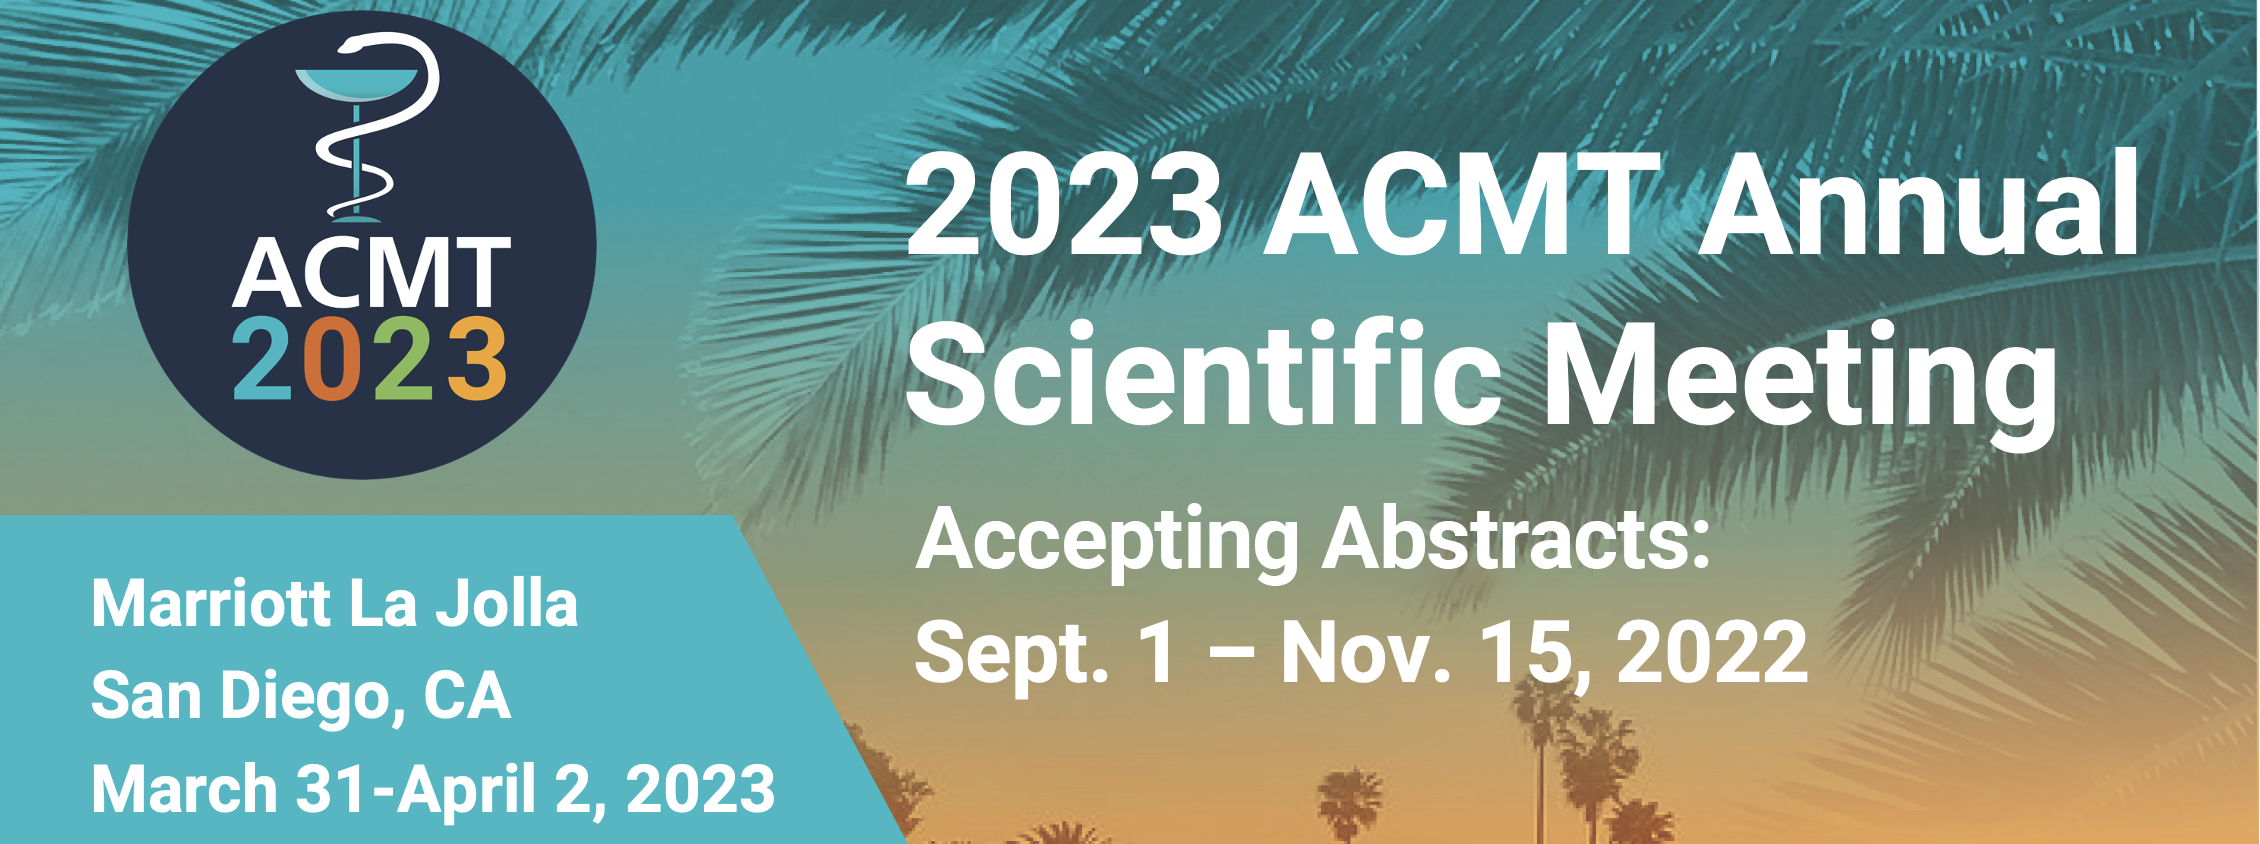 2023 ACMT | Annual Scientific Meeting